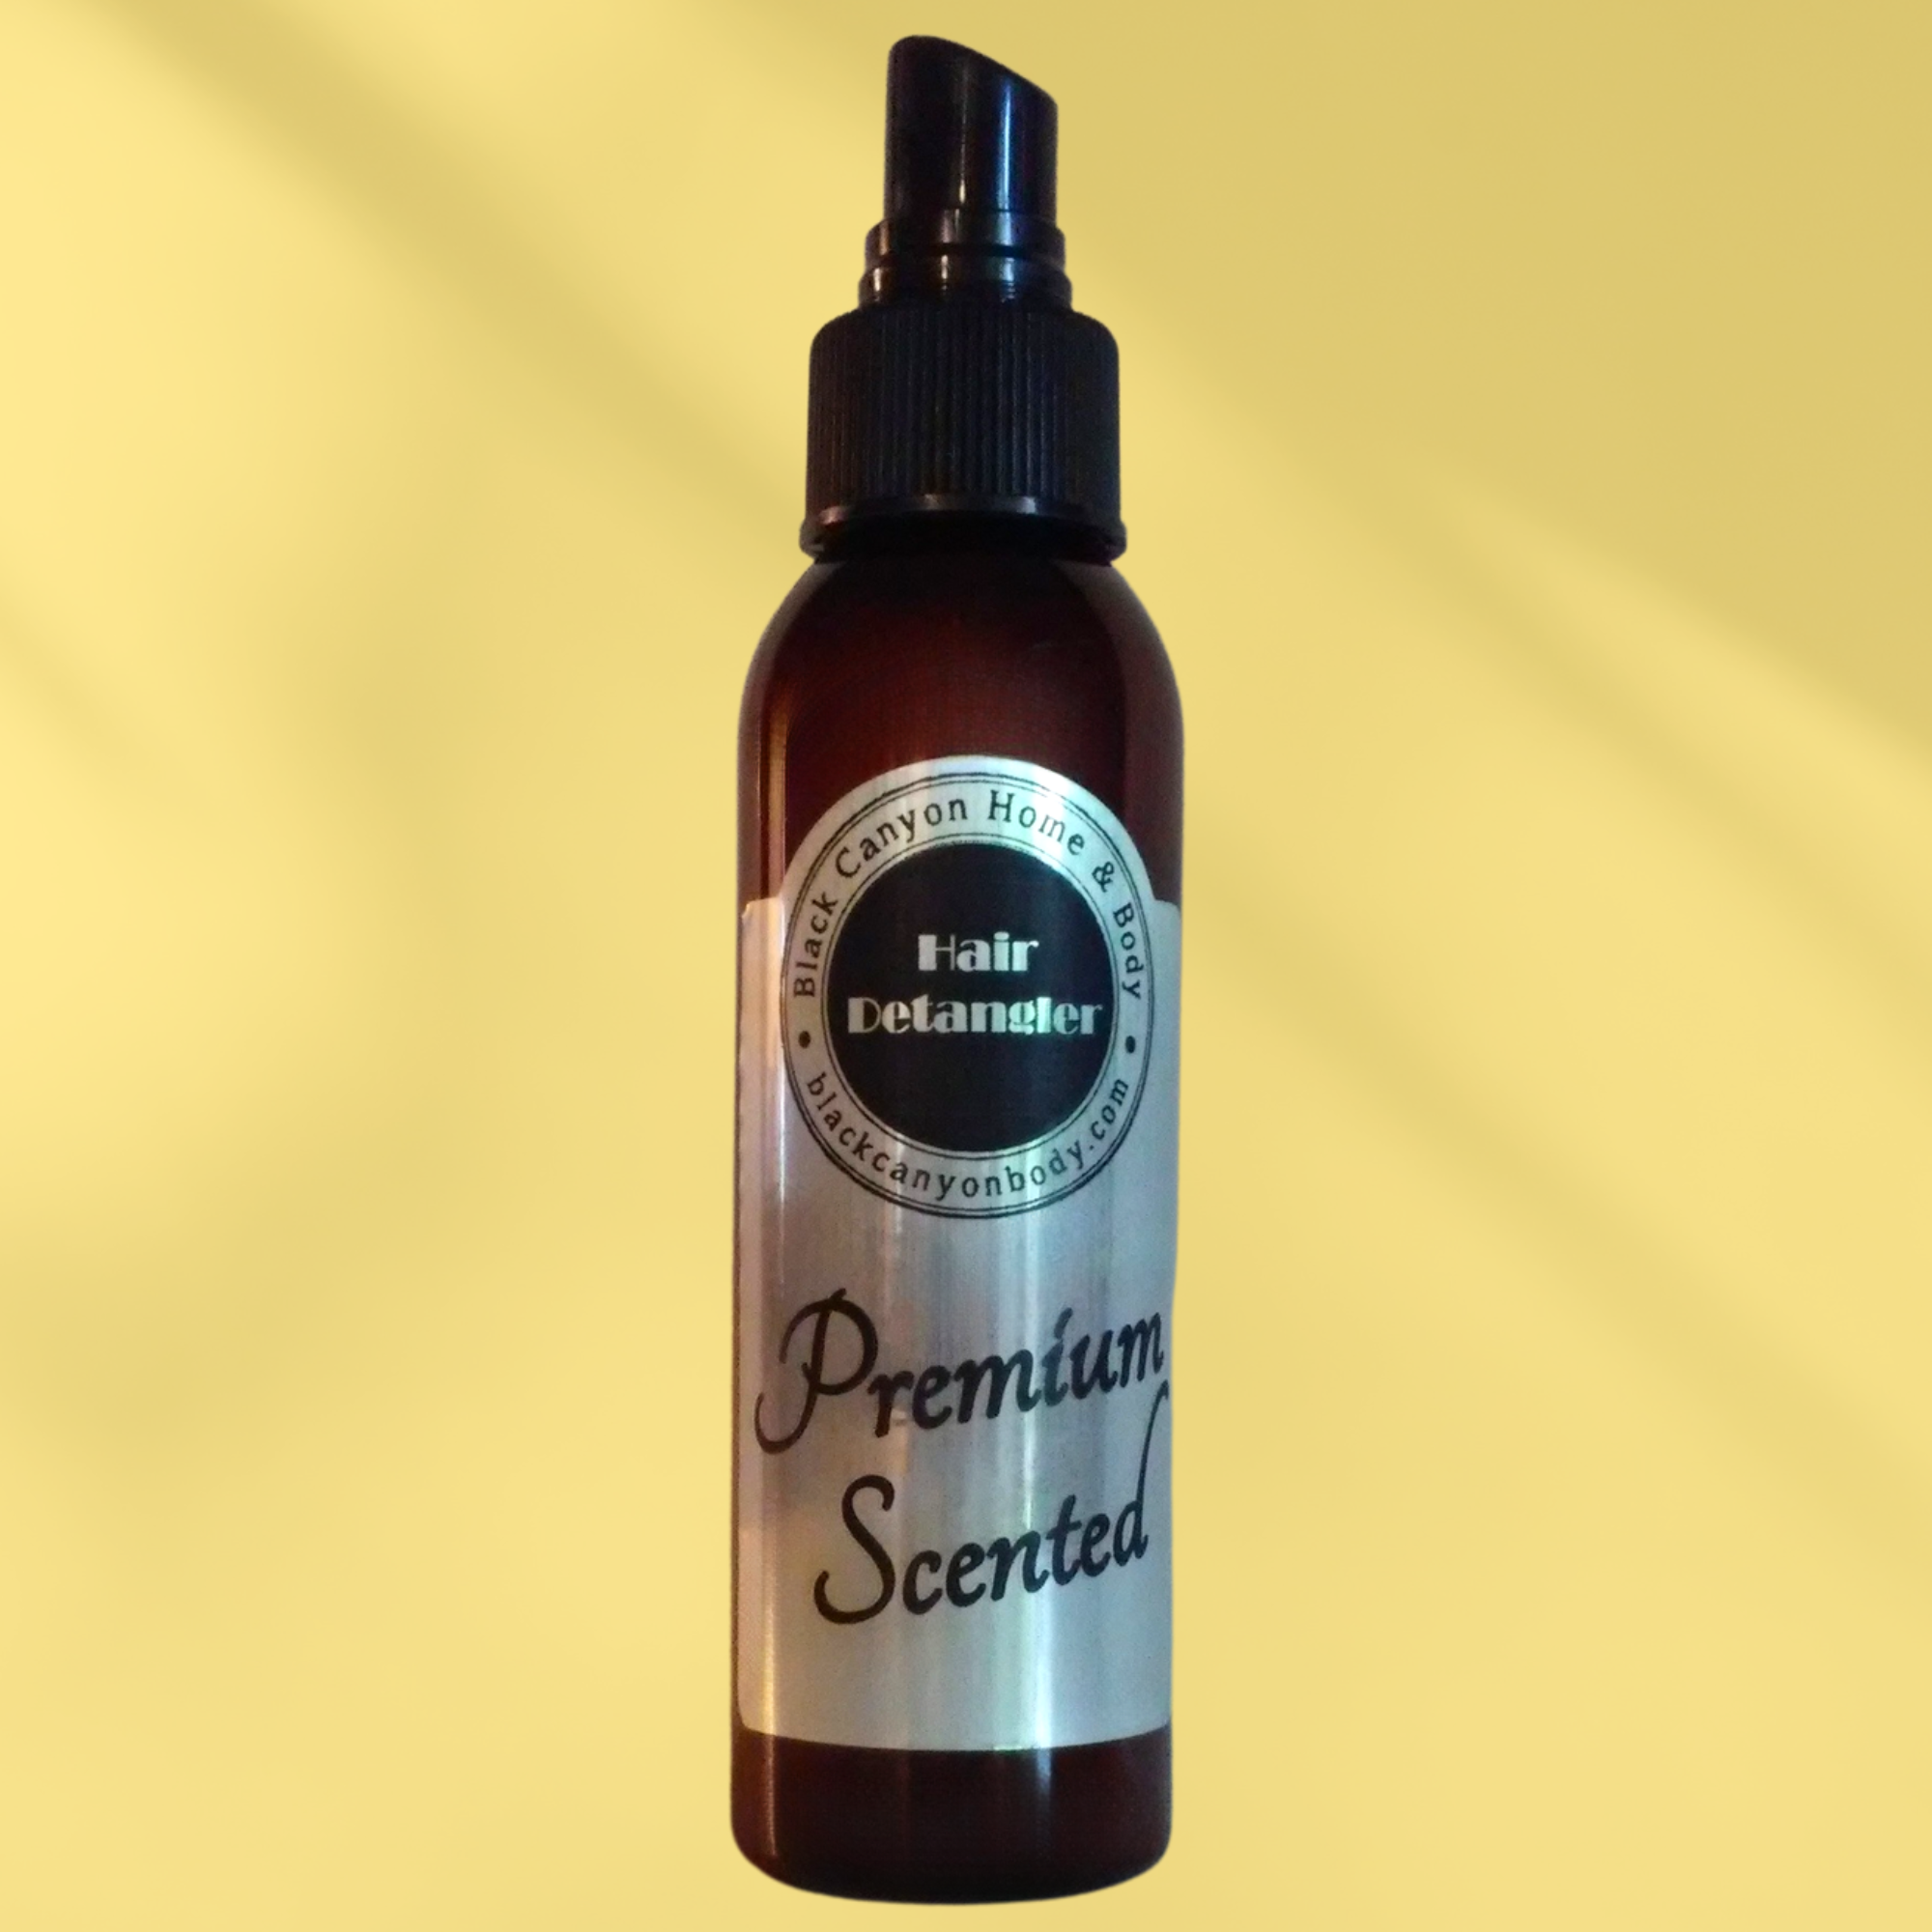 Paydens Cobalt Cedarwood & Citrus Scented Hair Detangler Spray with Olive Oil For Men